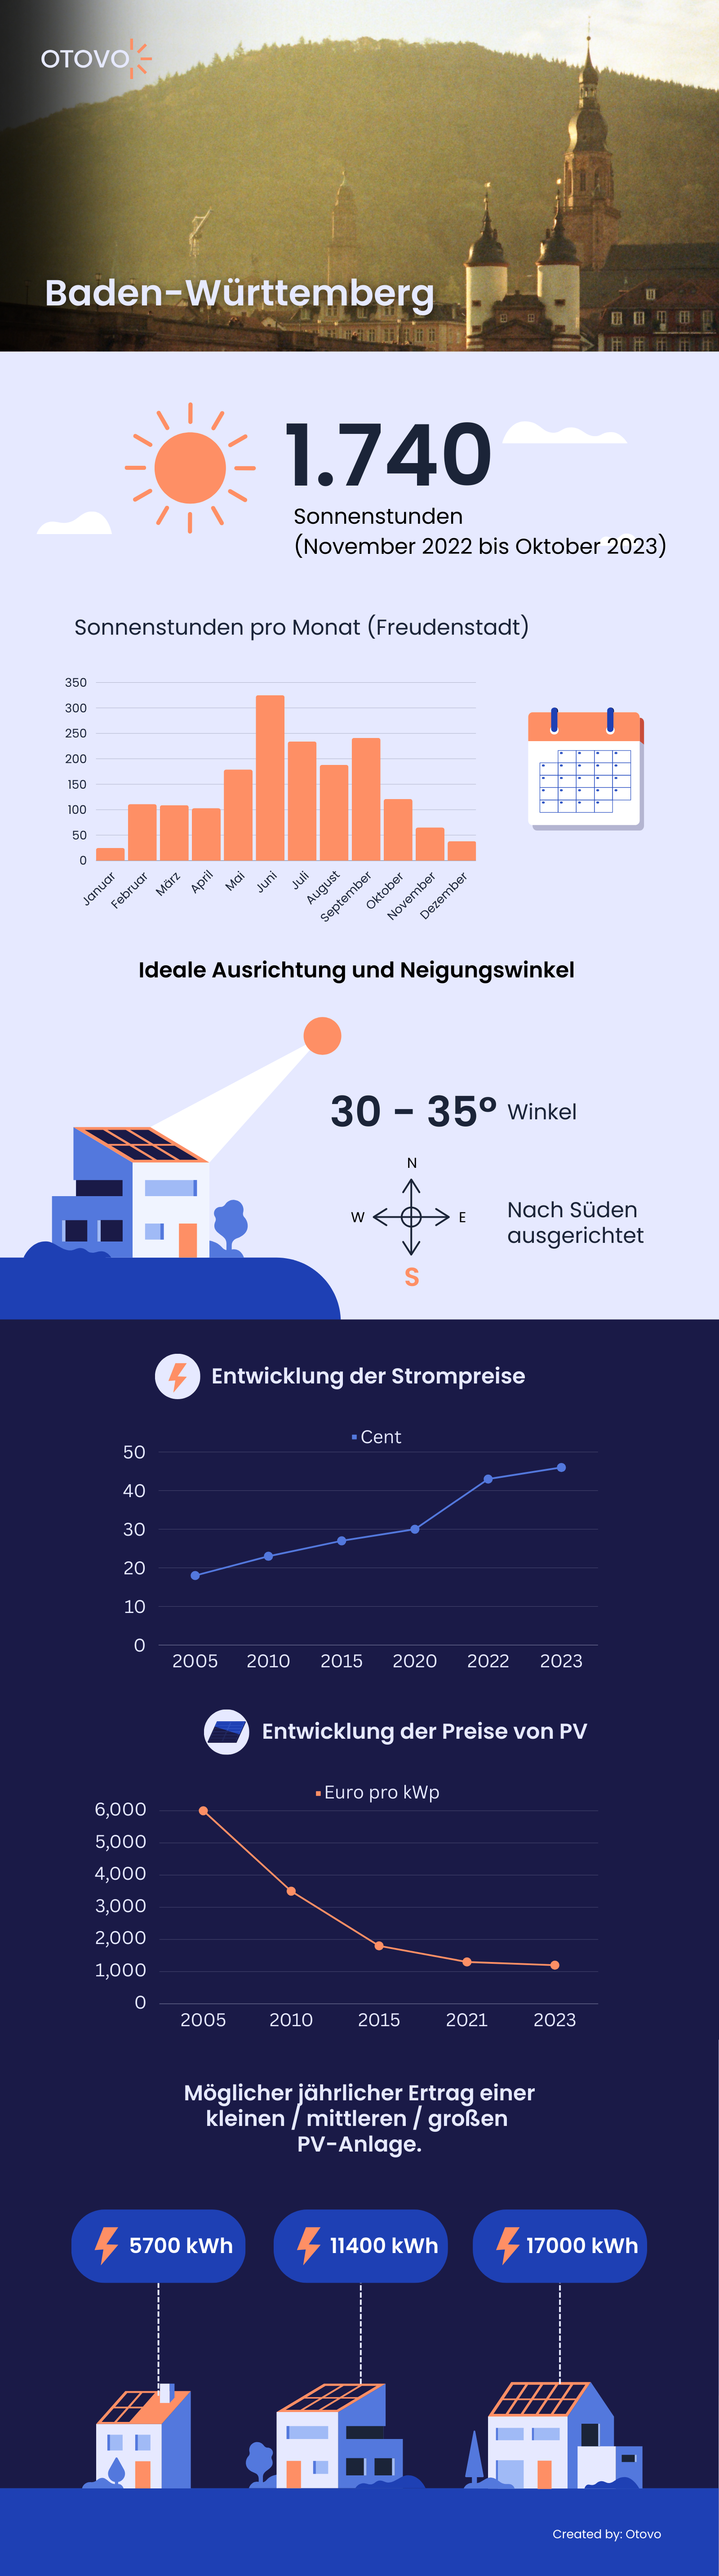 Infografik zu Solaranlagen in Baden-Württemberg